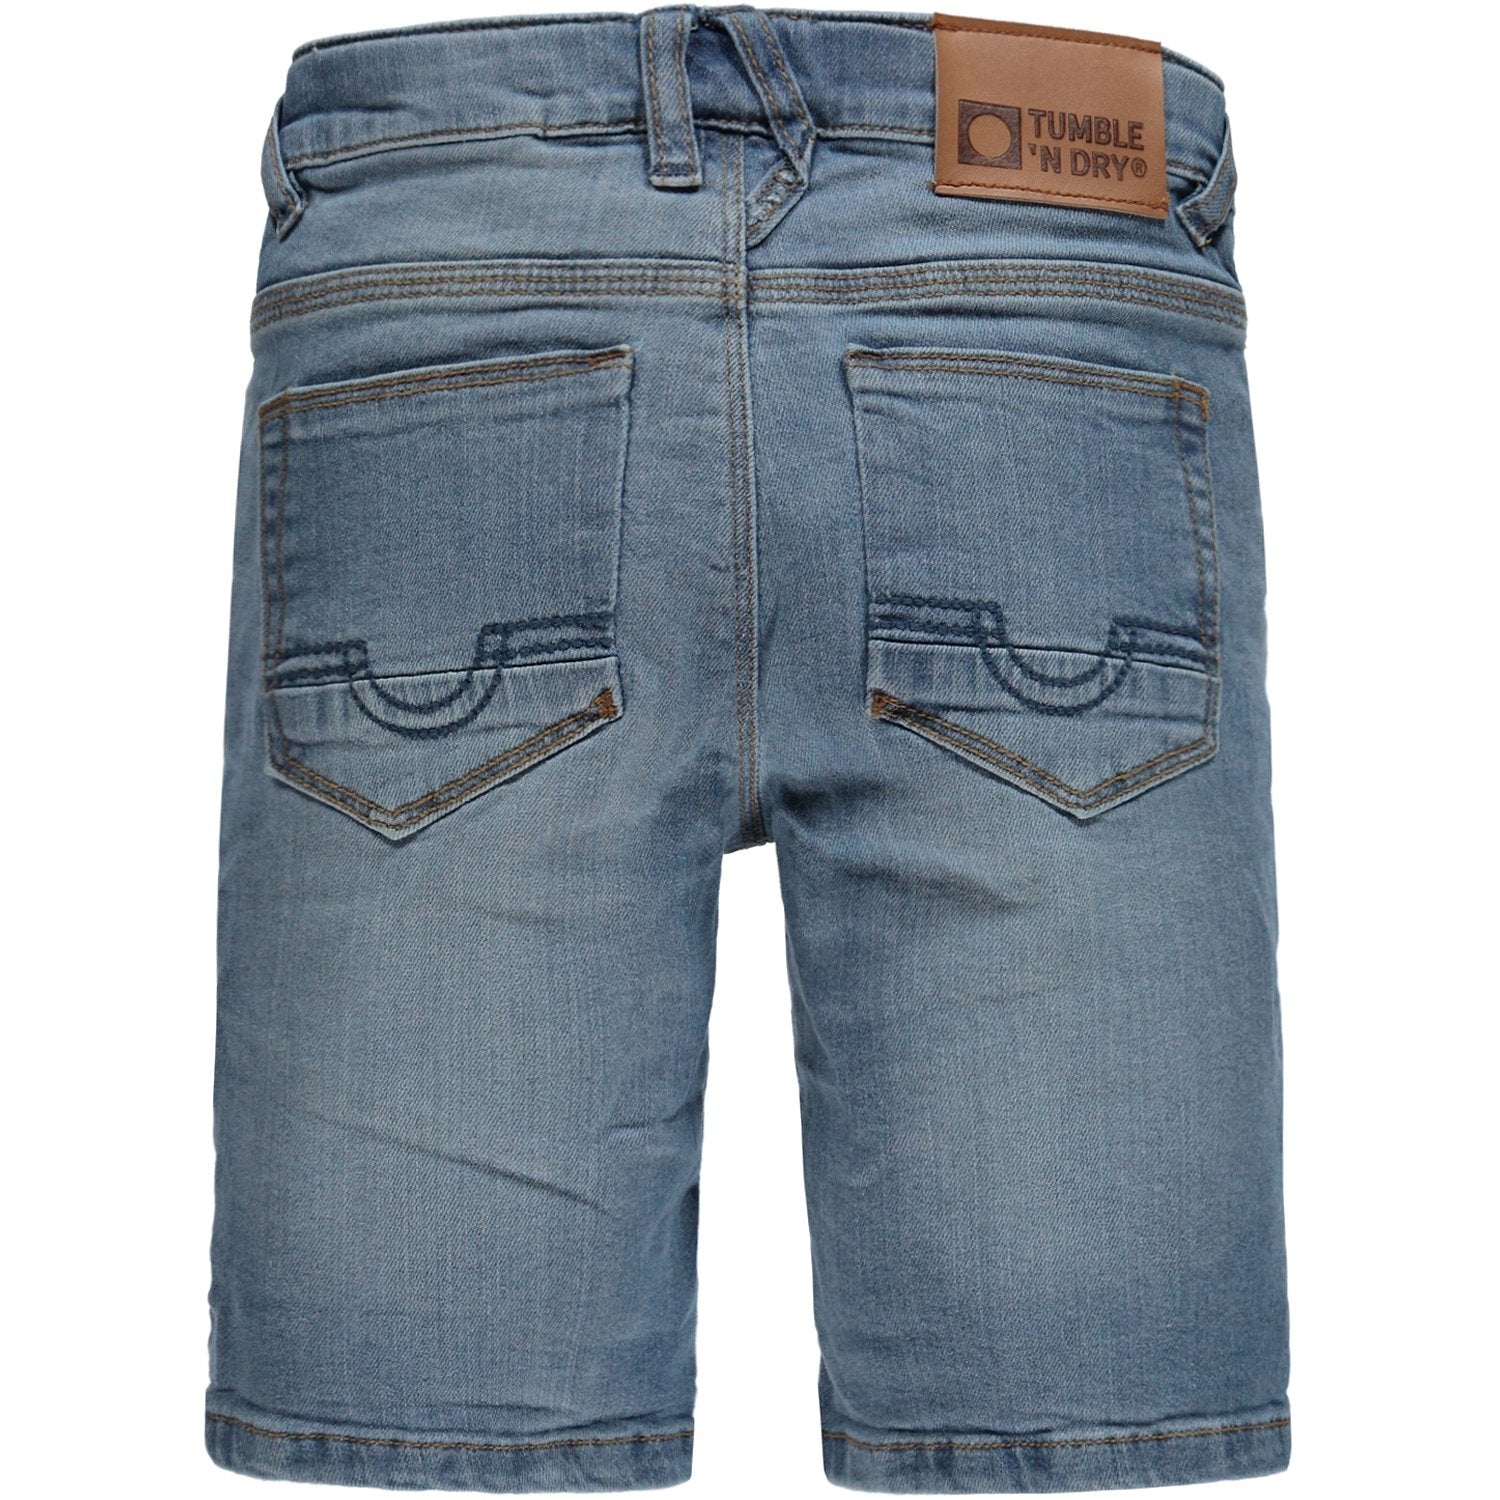 Jongens Broek Jeans kort van Tumble 'n Dry in de kleur Denim medium used in maat 128.